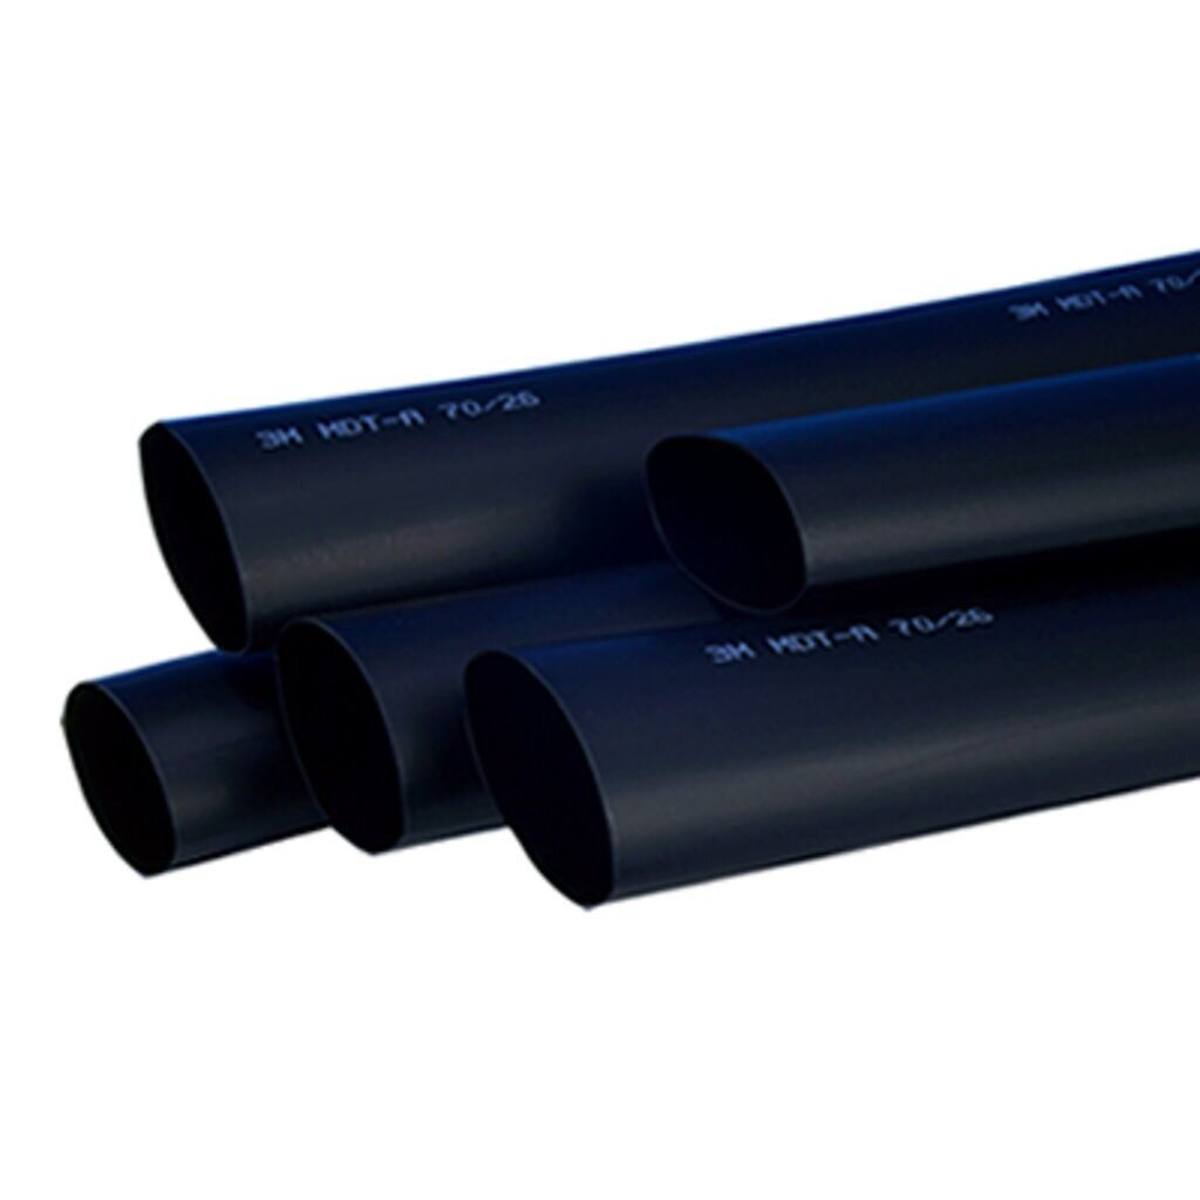  3M HDT-A Paksuseinäinen lämpökutisteputki liimalla, musta, 85/26 mm, 1 m